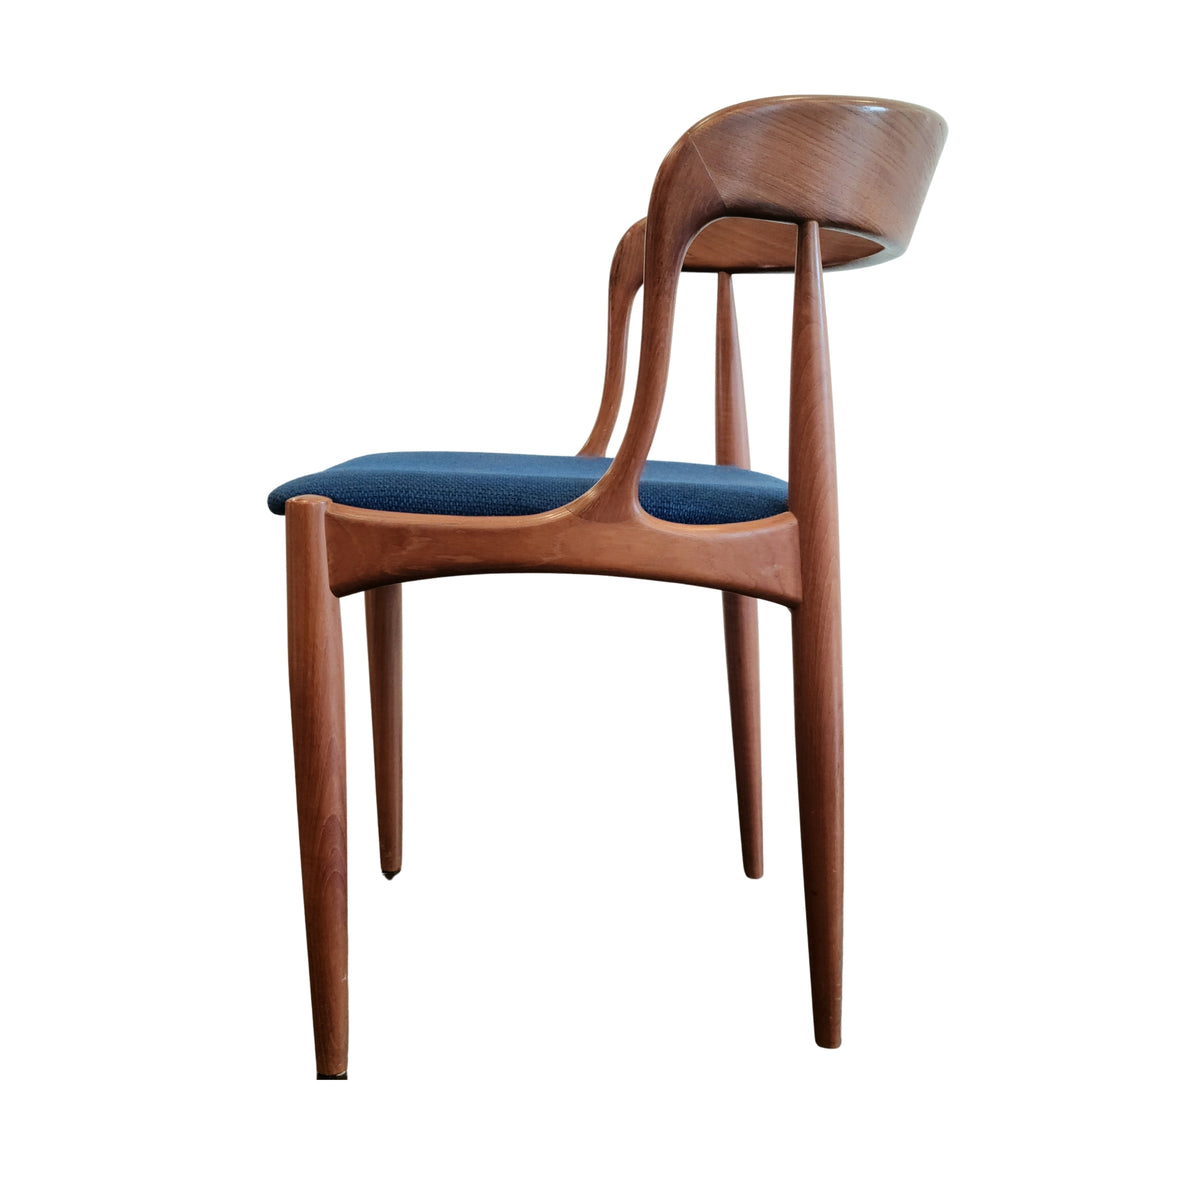 Teak Chairs by Johannes Andersen for Uldum, Denmark